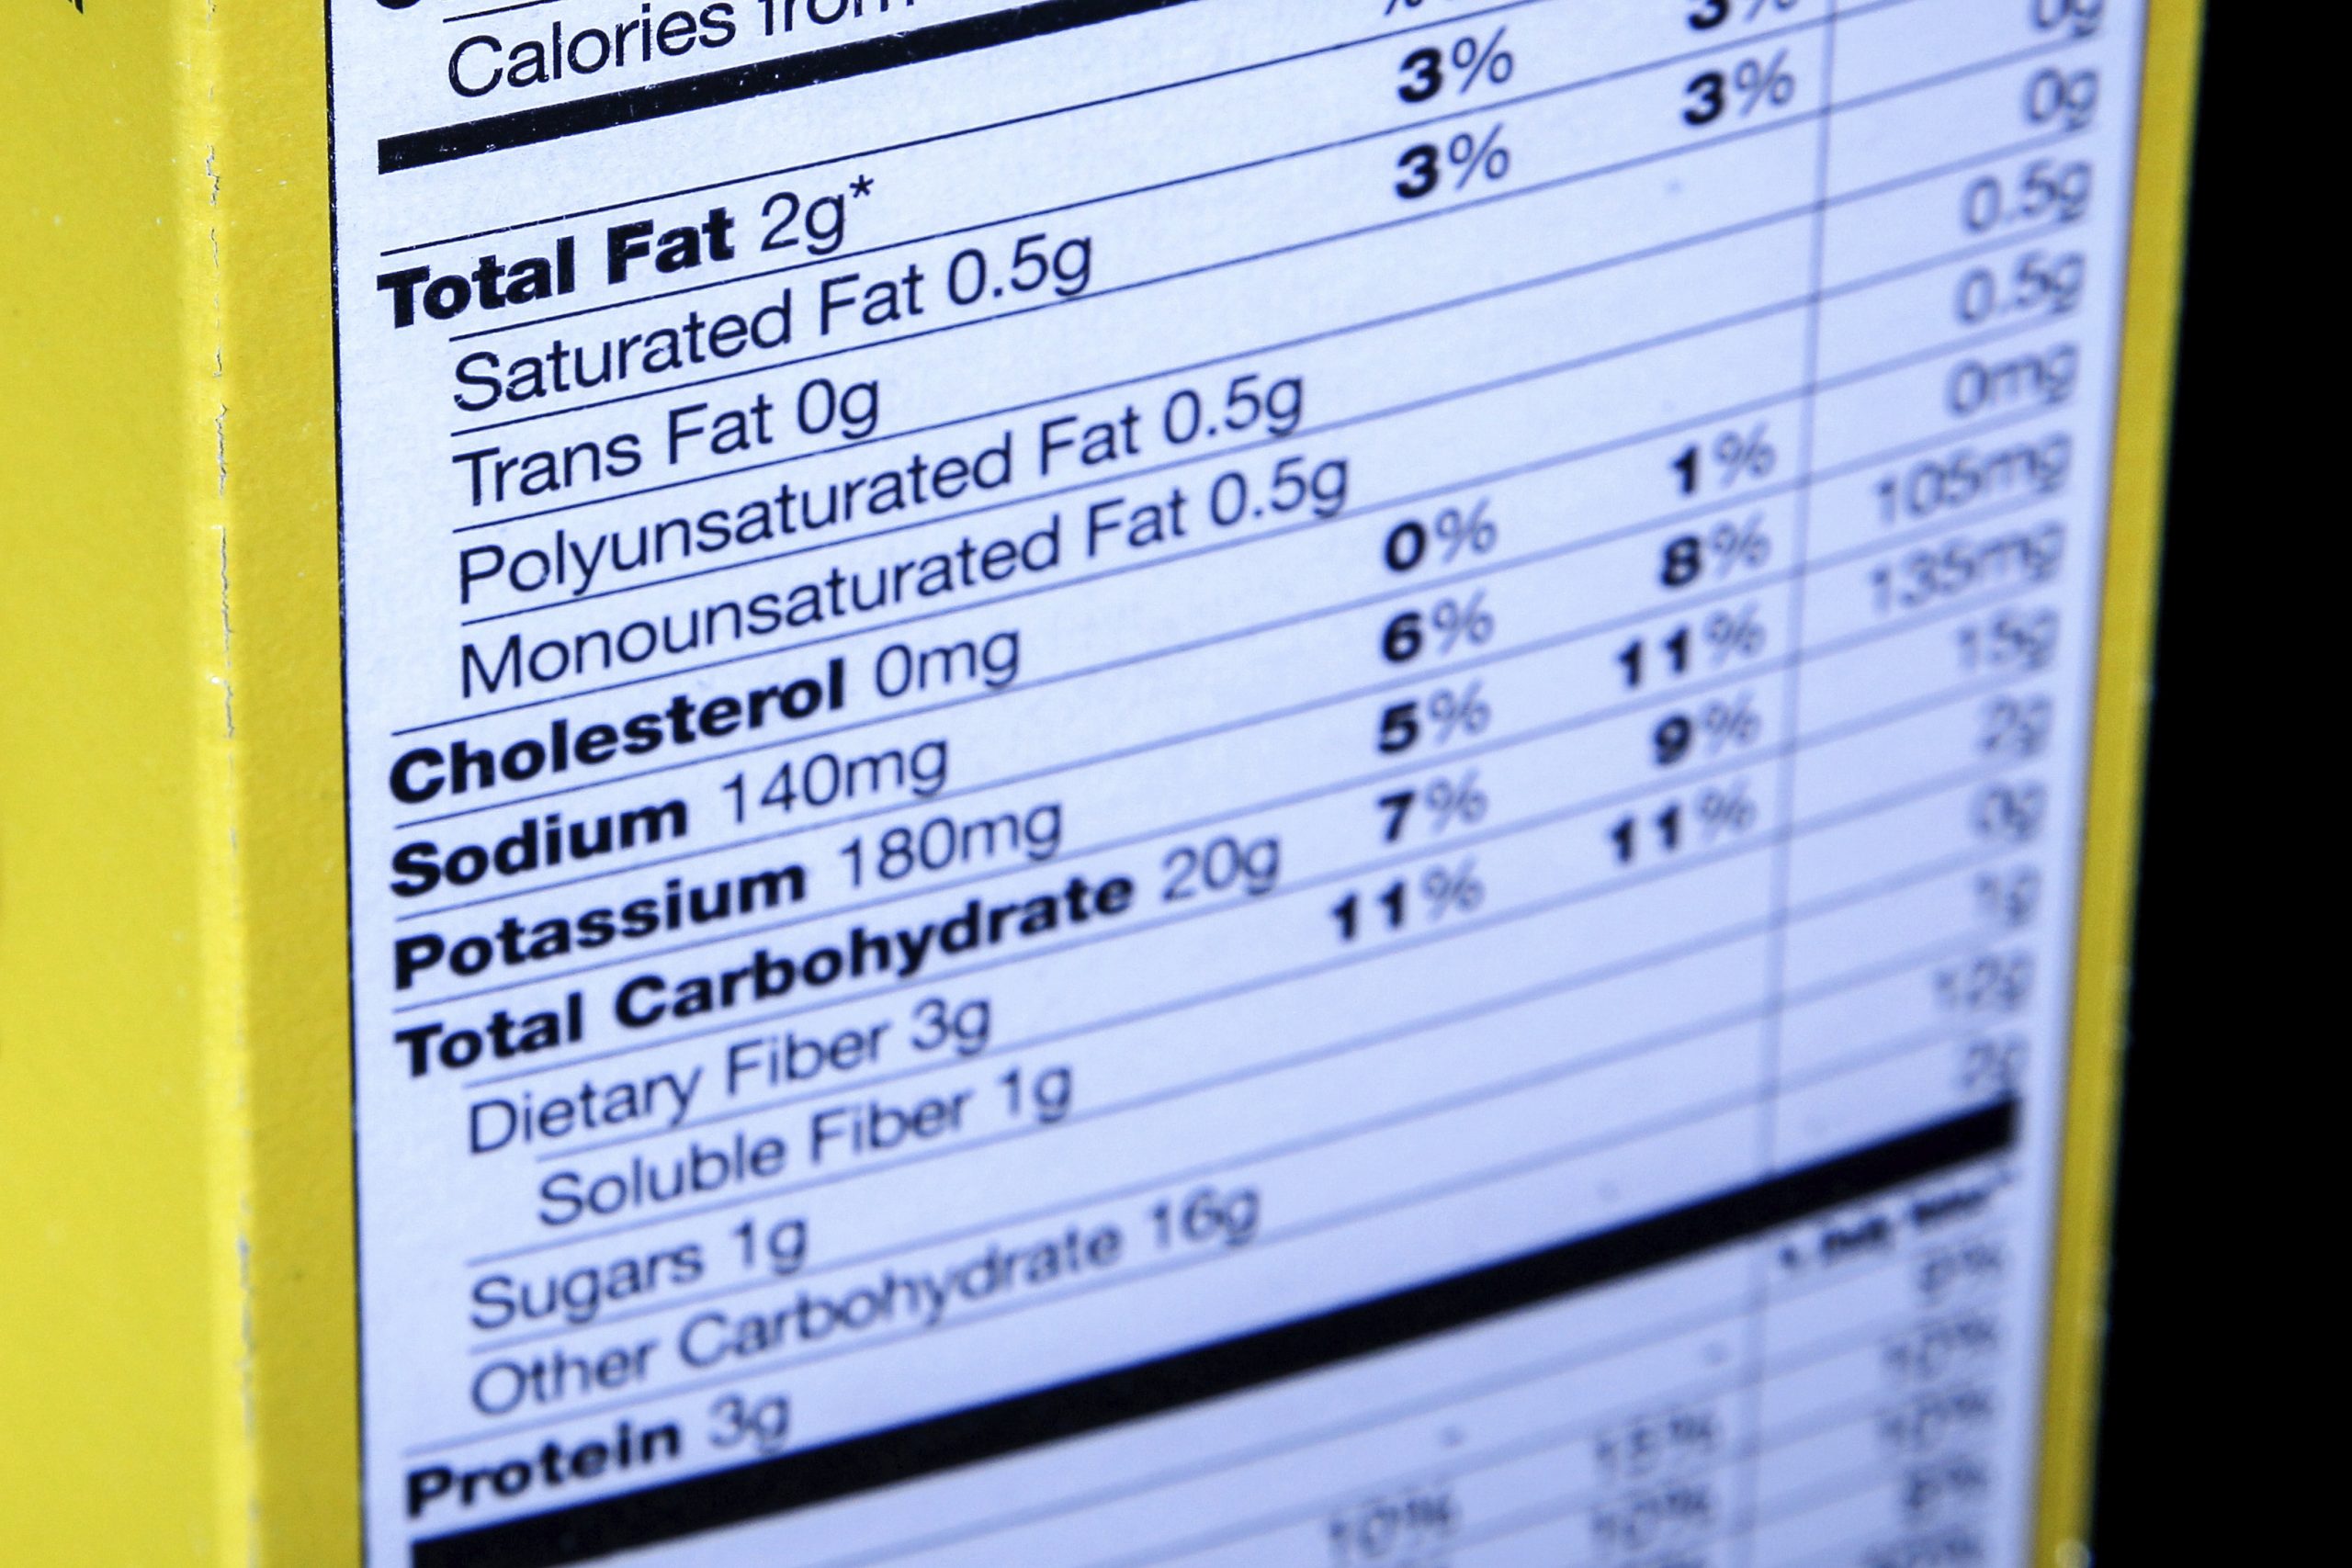 拚图)美FDA建议食品业减盐 目标减少国民12%钠摄取量